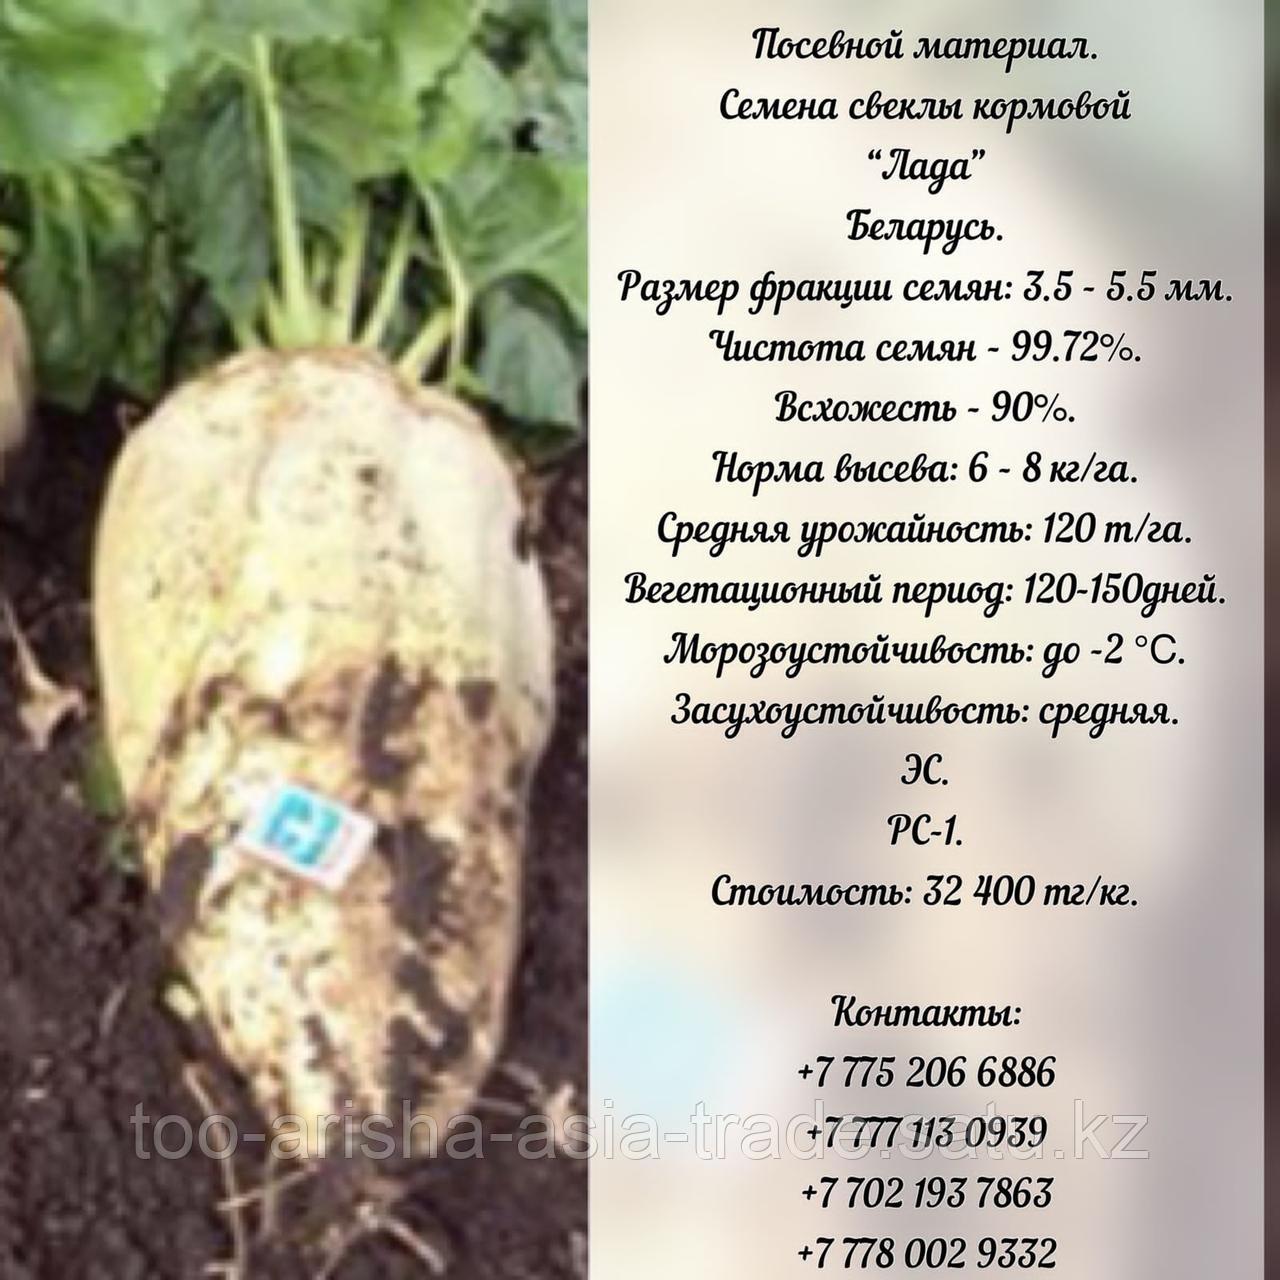 Семена кормовой свеклы "Лада"  ЭС, РС -1  Беларусь